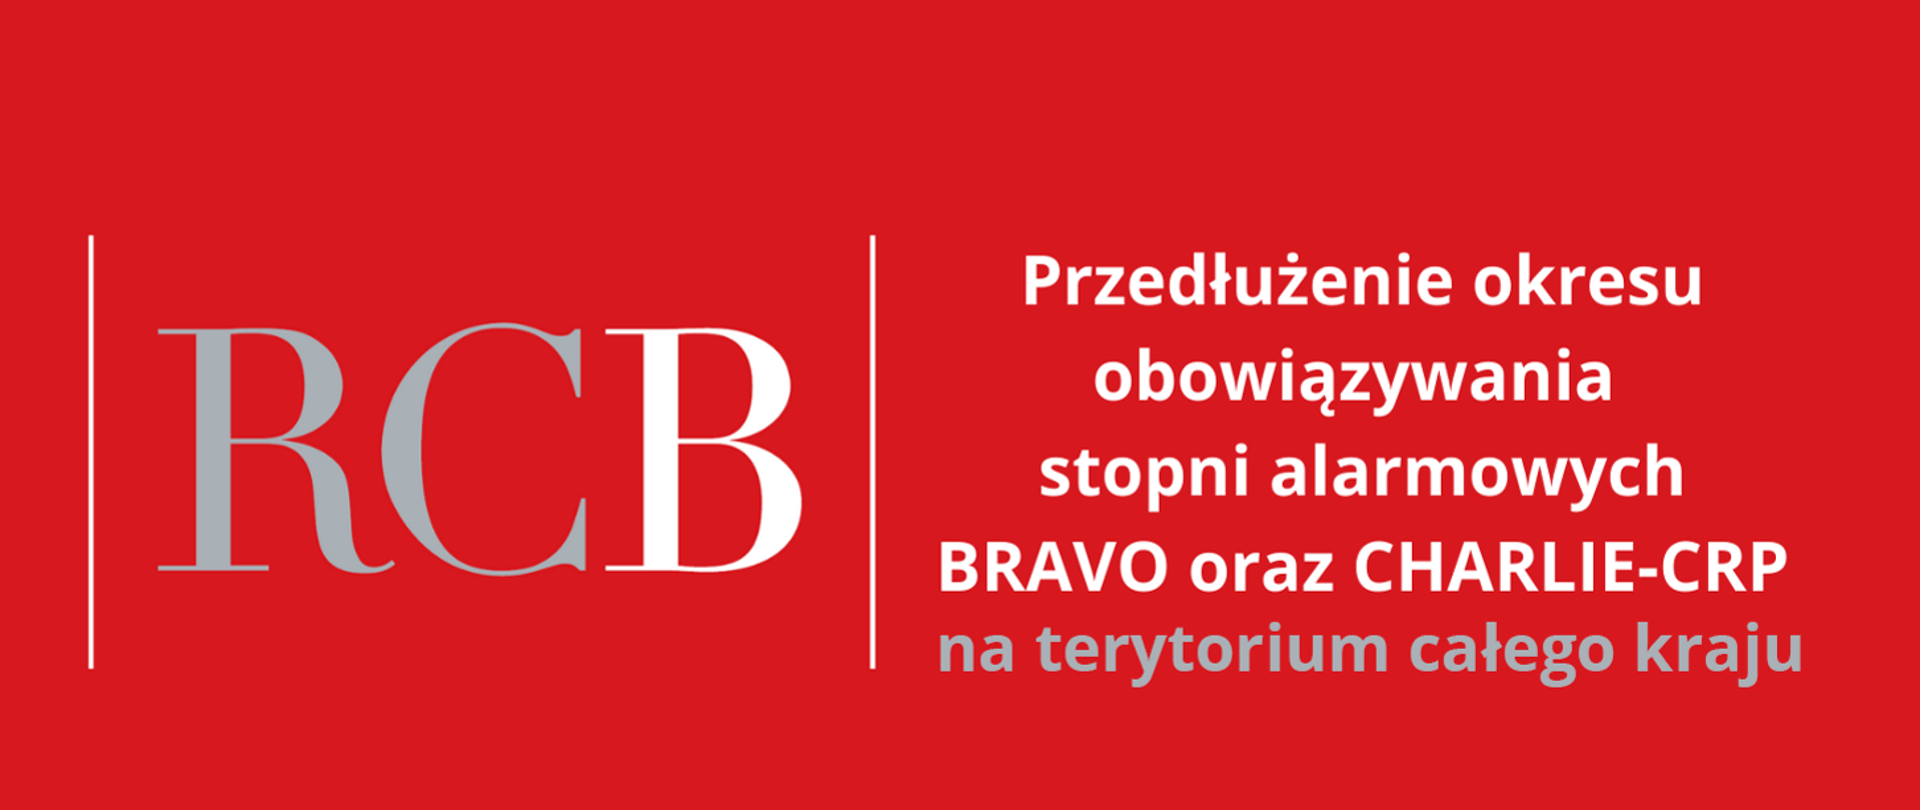 Plakat z informacją o przedłużeniu okresu obowiązywania stopnia alarmowych BRAVO oraz CHARLIE-CRP na terenie całego kraju, napis w kolorze białym na czerwonym tle 